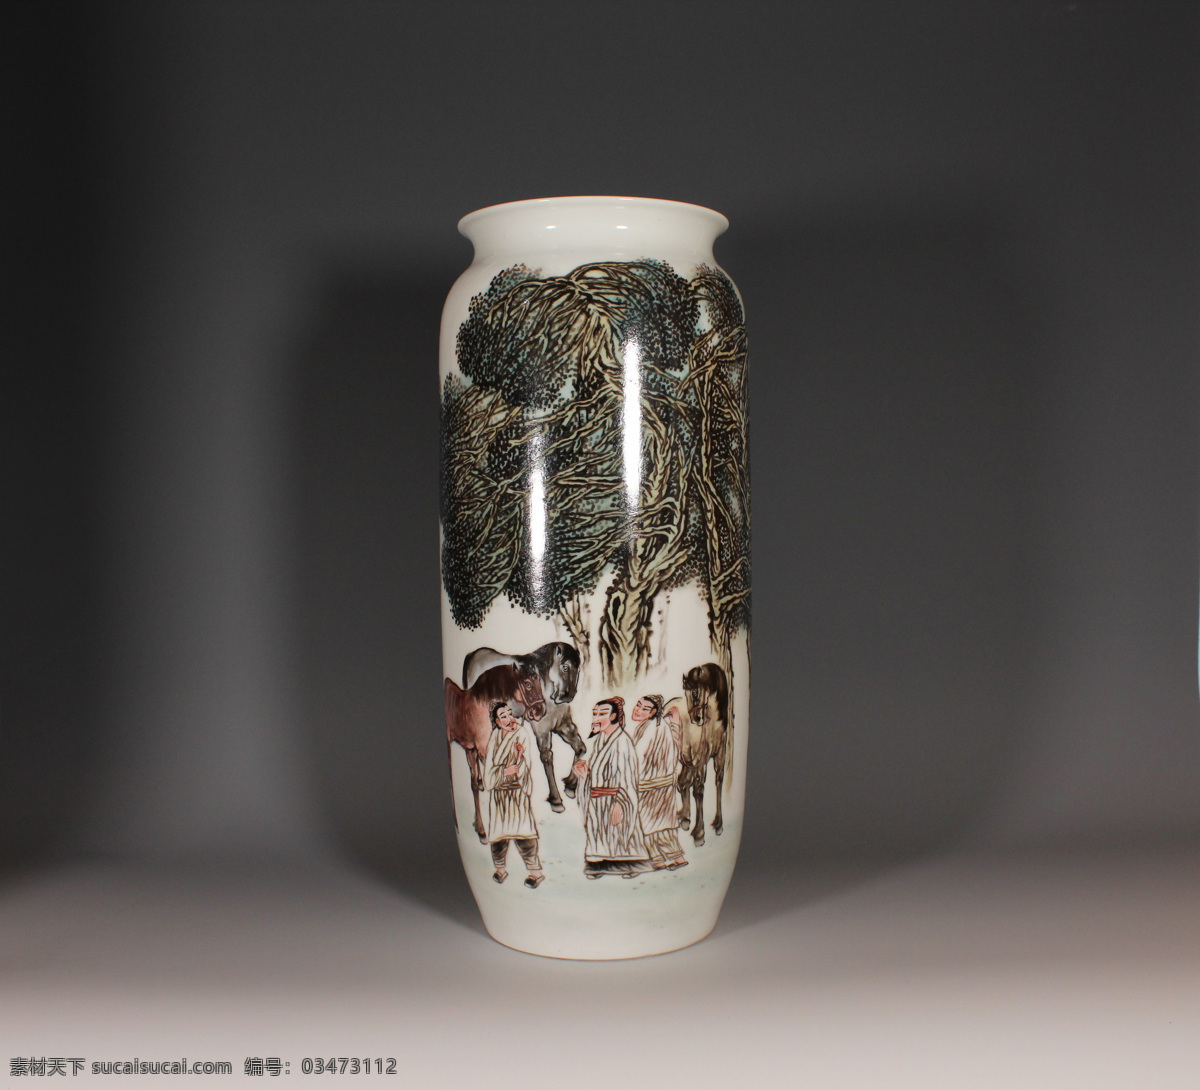 釉 上 粉彩 相马 图 瓶 釉上 相马图瓶 瓷器 瓷瓶 赏瓶 文化艺术 传统文化